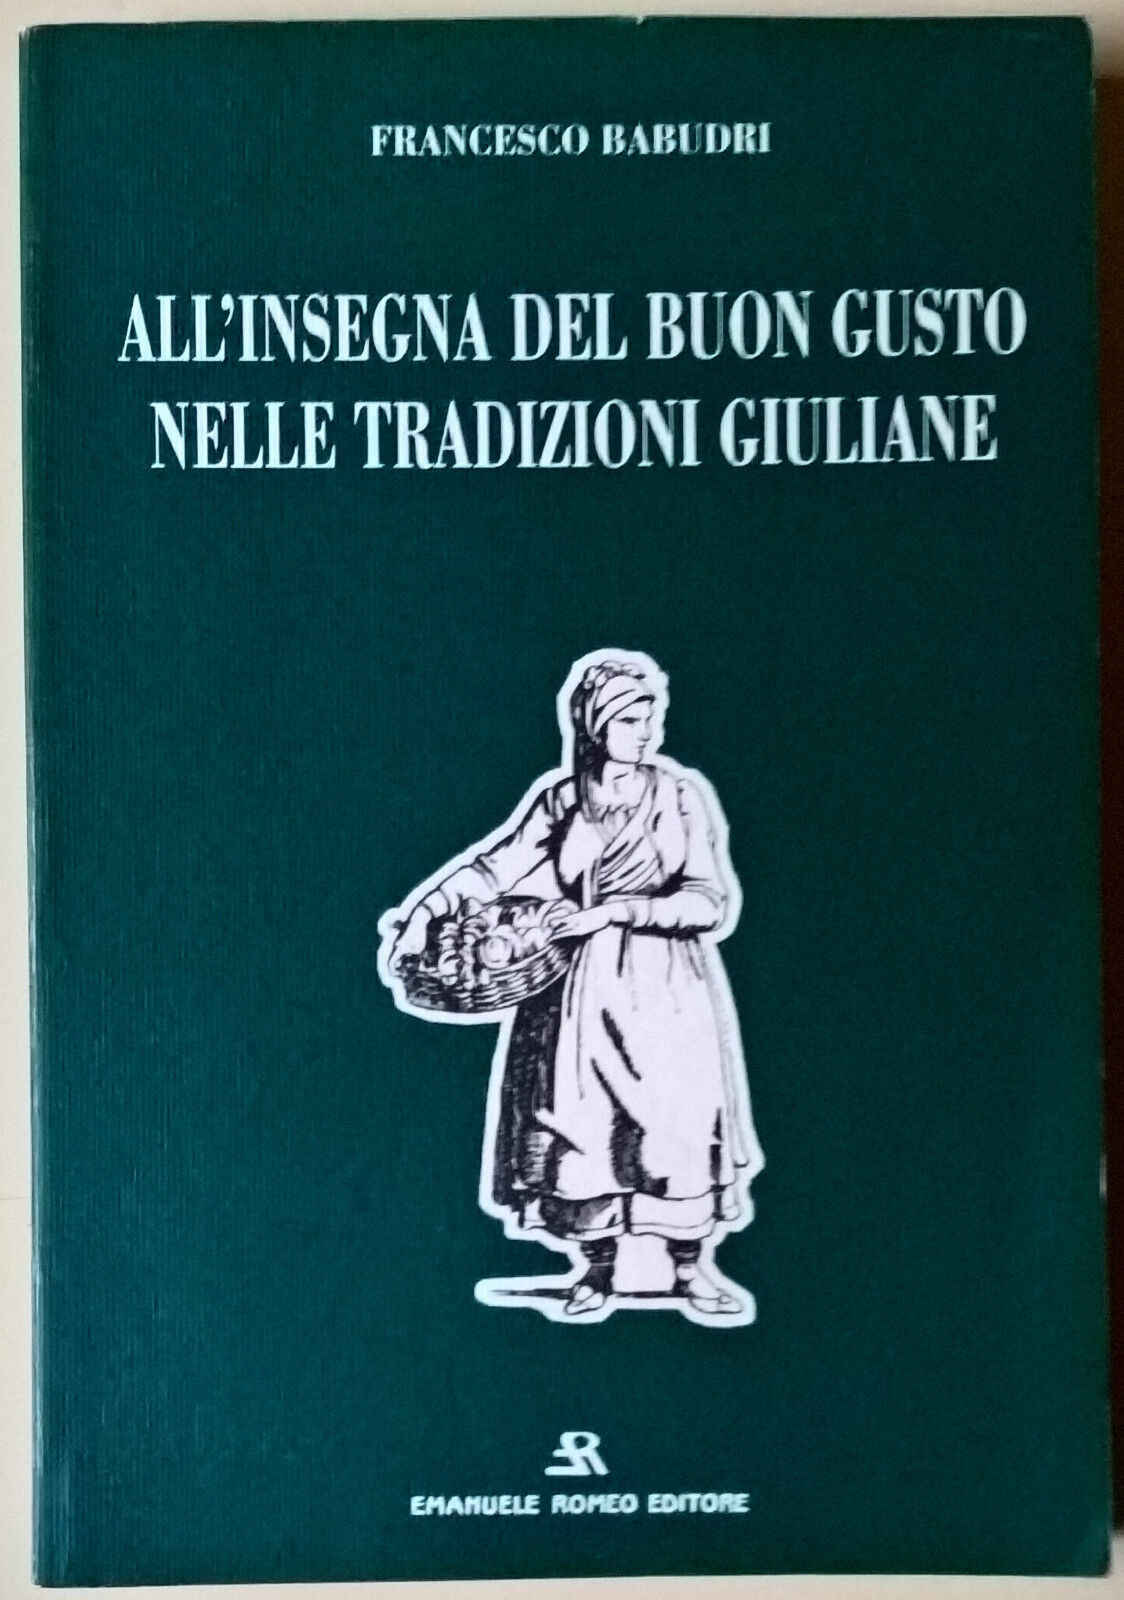 AlL'insegna del buon gusto nelle tradizioni giuliane - Babudri - 1995 E. Romeo L libro usato